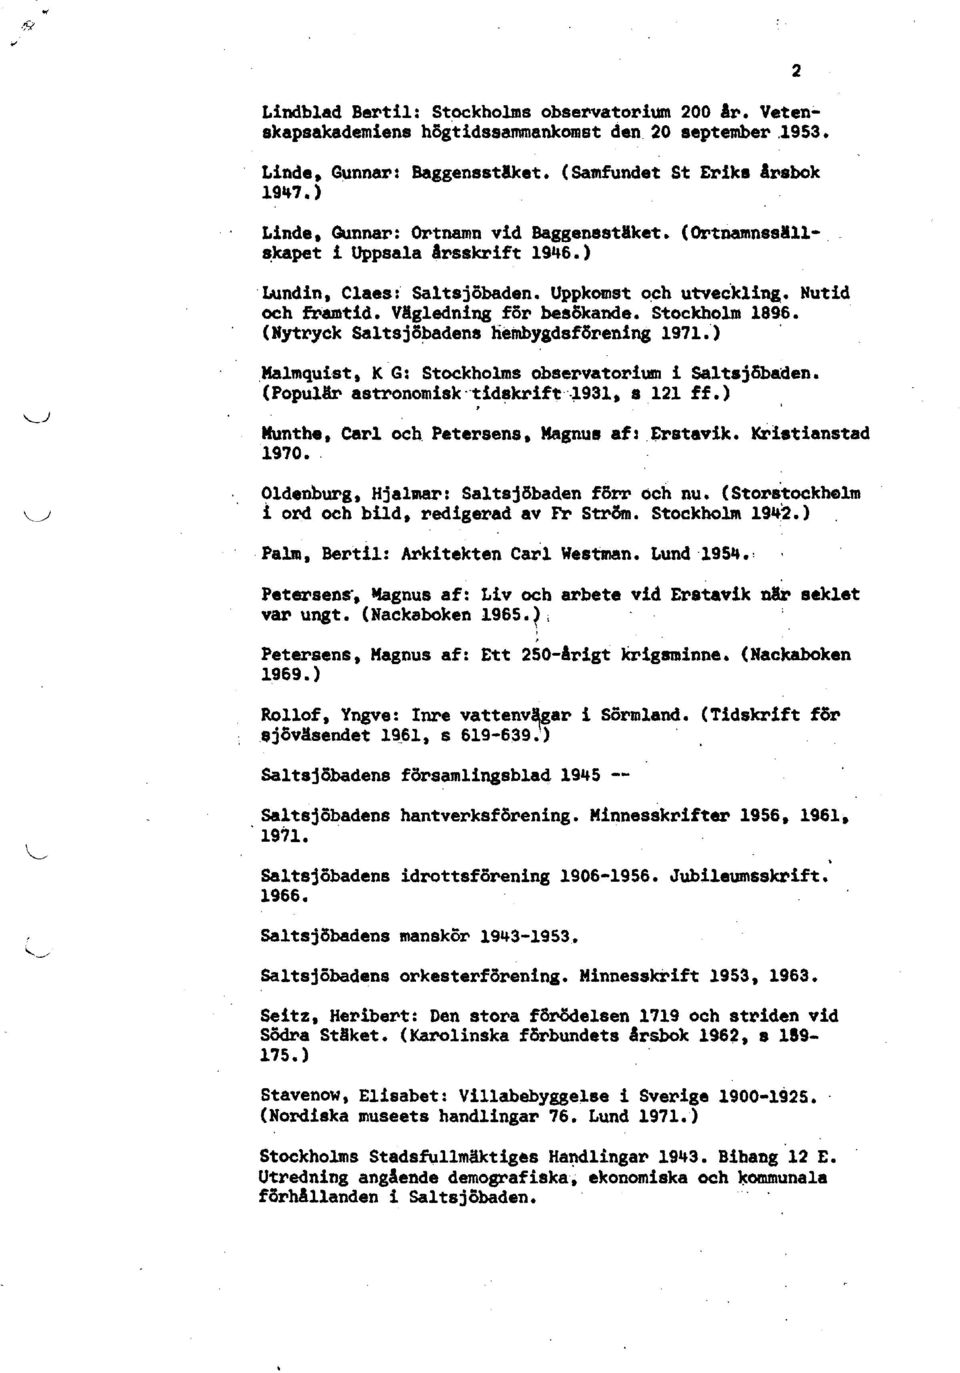 Stockholm 1896. (Nytryck Saltsjö~adena heinbygdsf5rening 1971").,Ma1mqui st t K' G: Stockholms observatorium i saltsjöbaden. (PopulAr astronomisk tid~krift,"931. 8.121 ff.) > Munthe. Carl och.